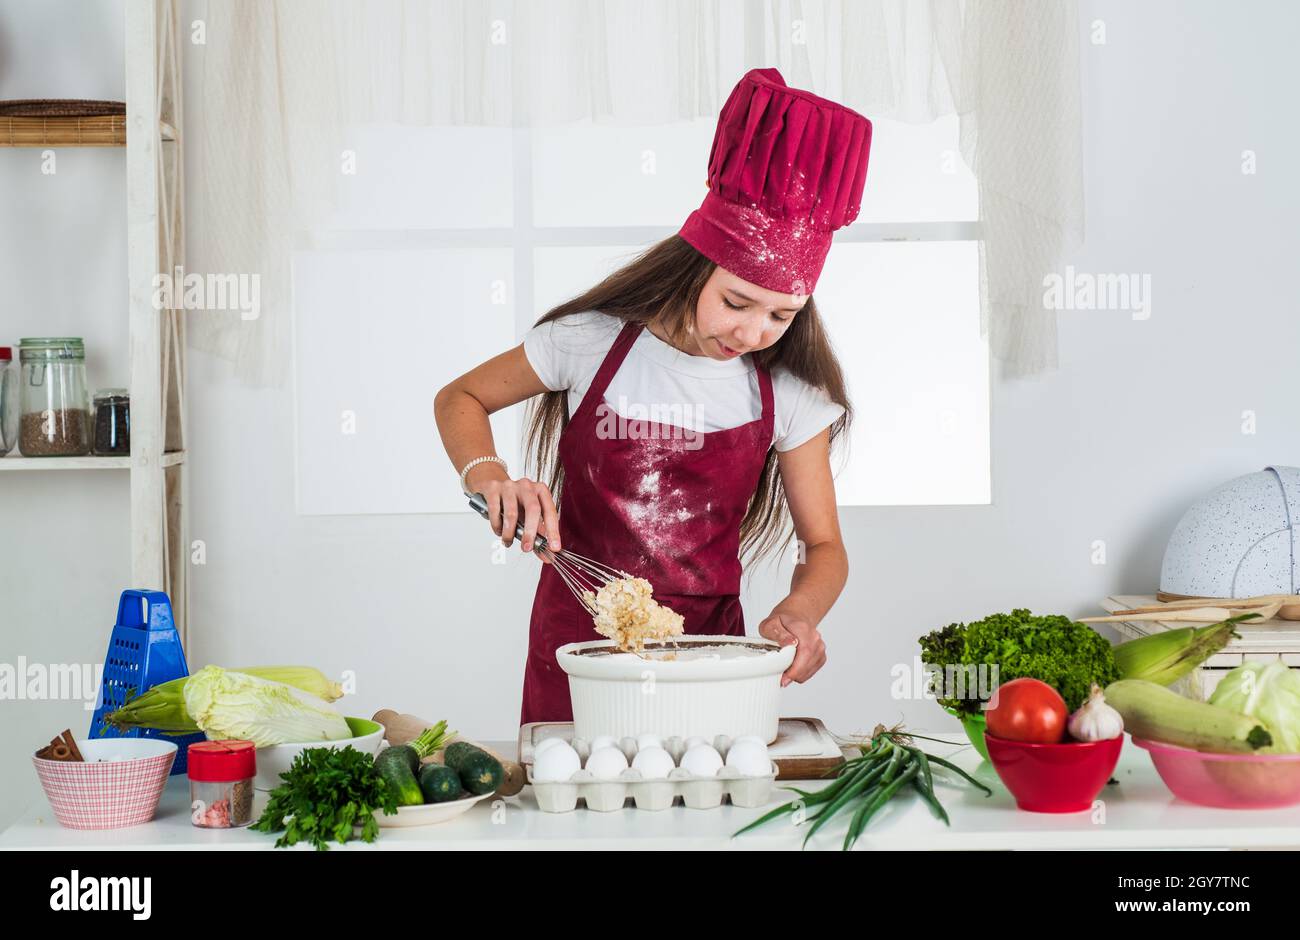 Mädchen Kind in Koch Schürze und Hut Kochen, ökologisch Stockfotografie -  Alamy